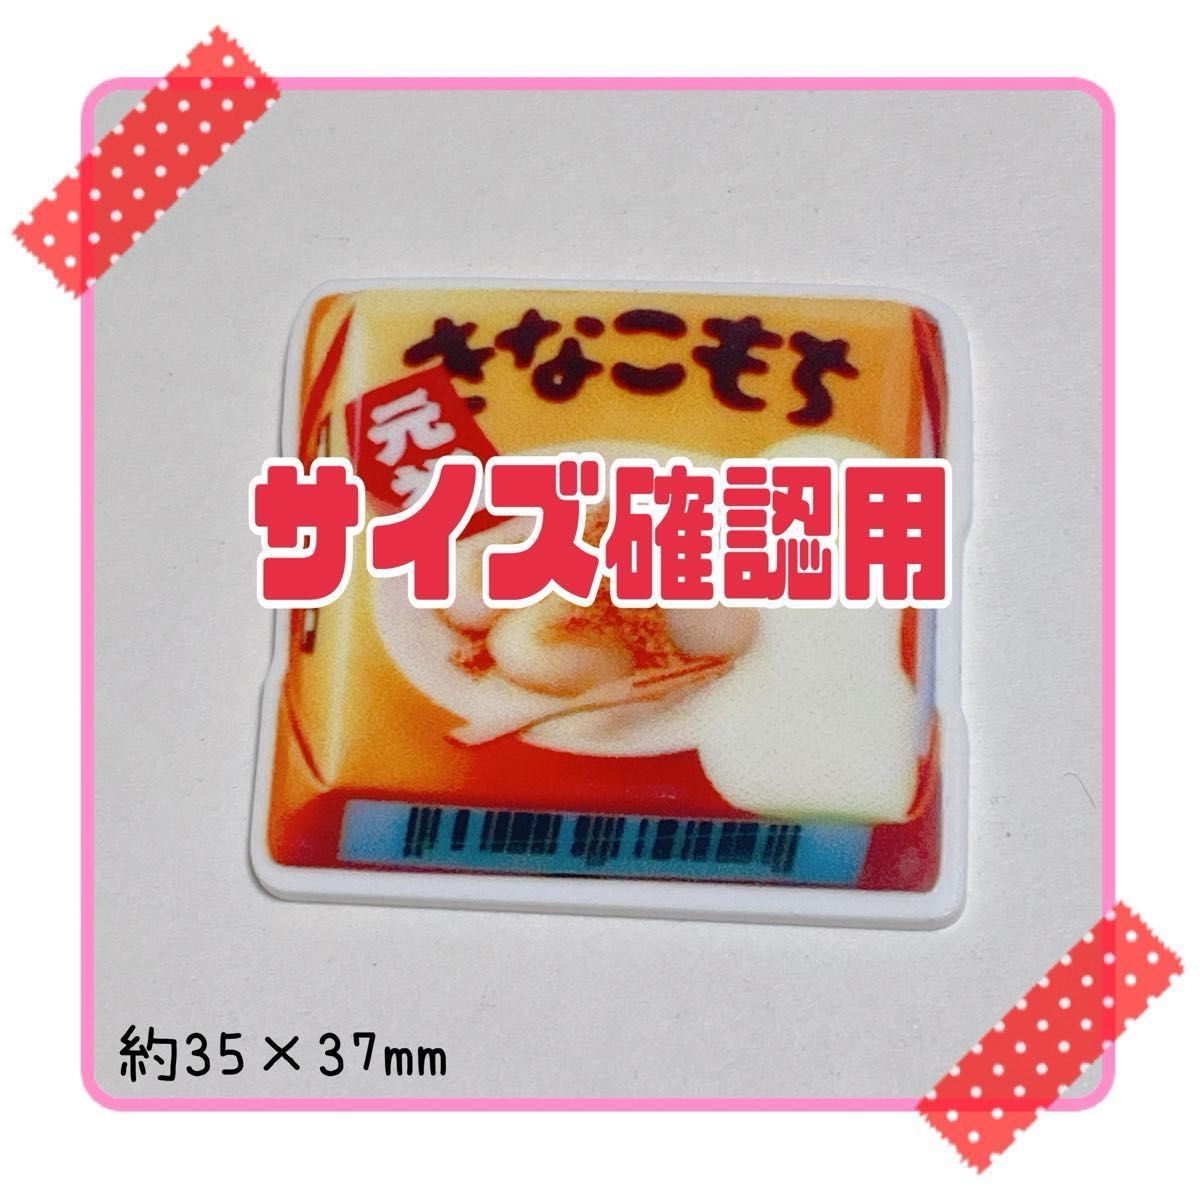 A659 デコパーツ プラバン プラ板 プラパーツ チョコ お菓子 駄菓子 ミニチュア